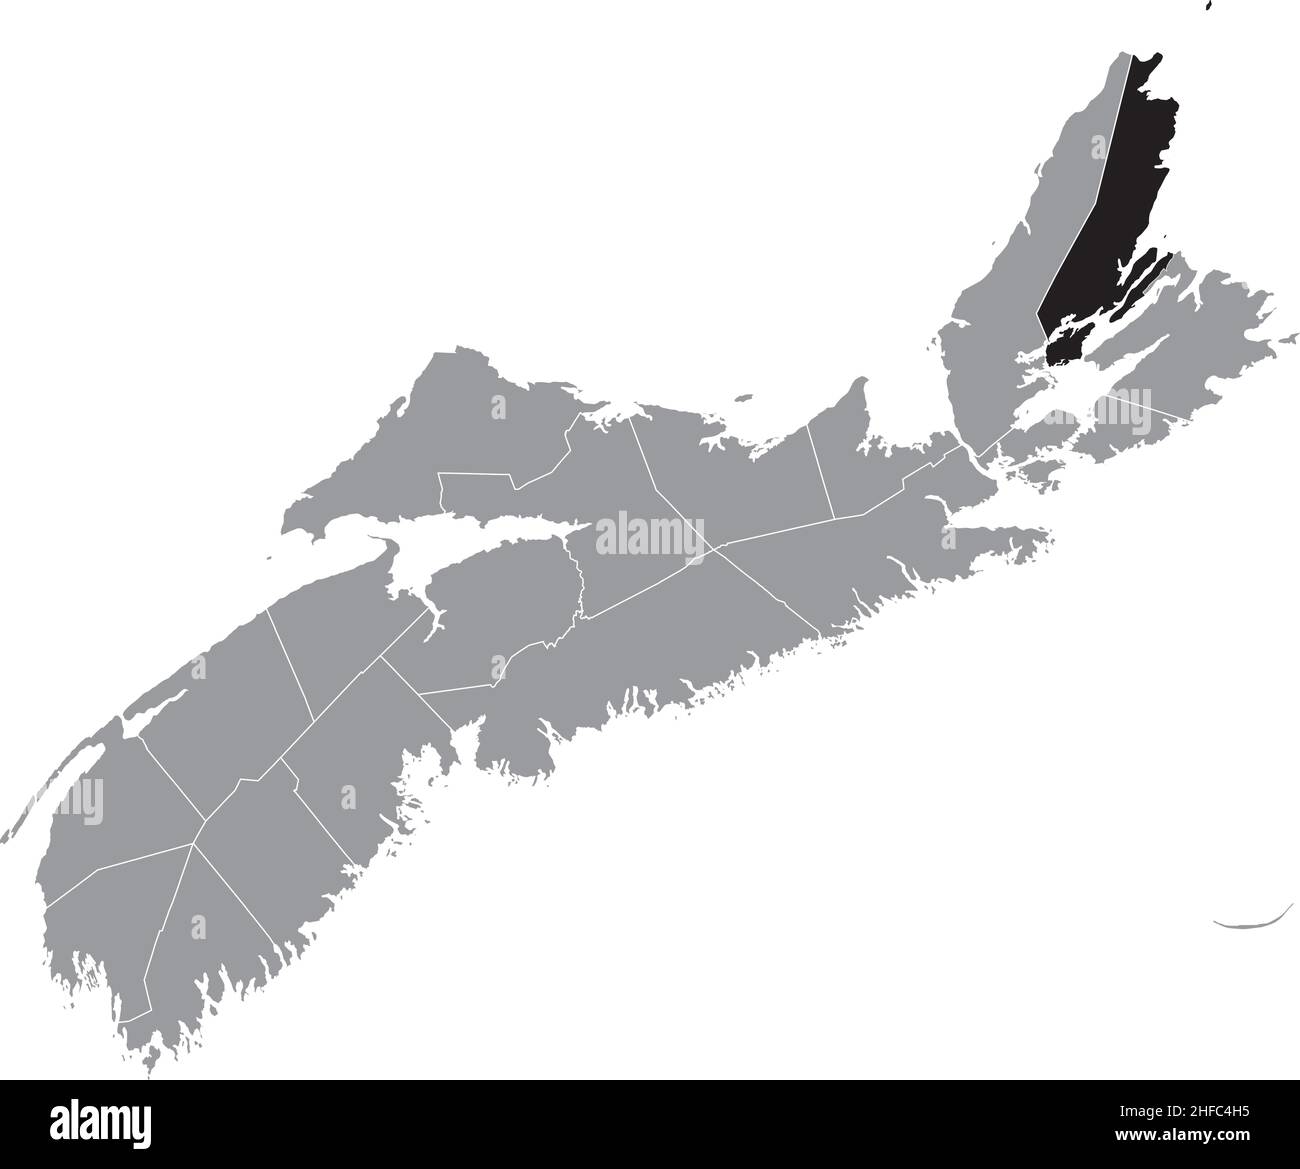 Schwarz flach leer markiert Lageplan des VICTORIA COUNTY in grauer Verwaltungskarte der Grafschaften der kanadischen Provinz Nova Scotia, Canad Stock Vektor